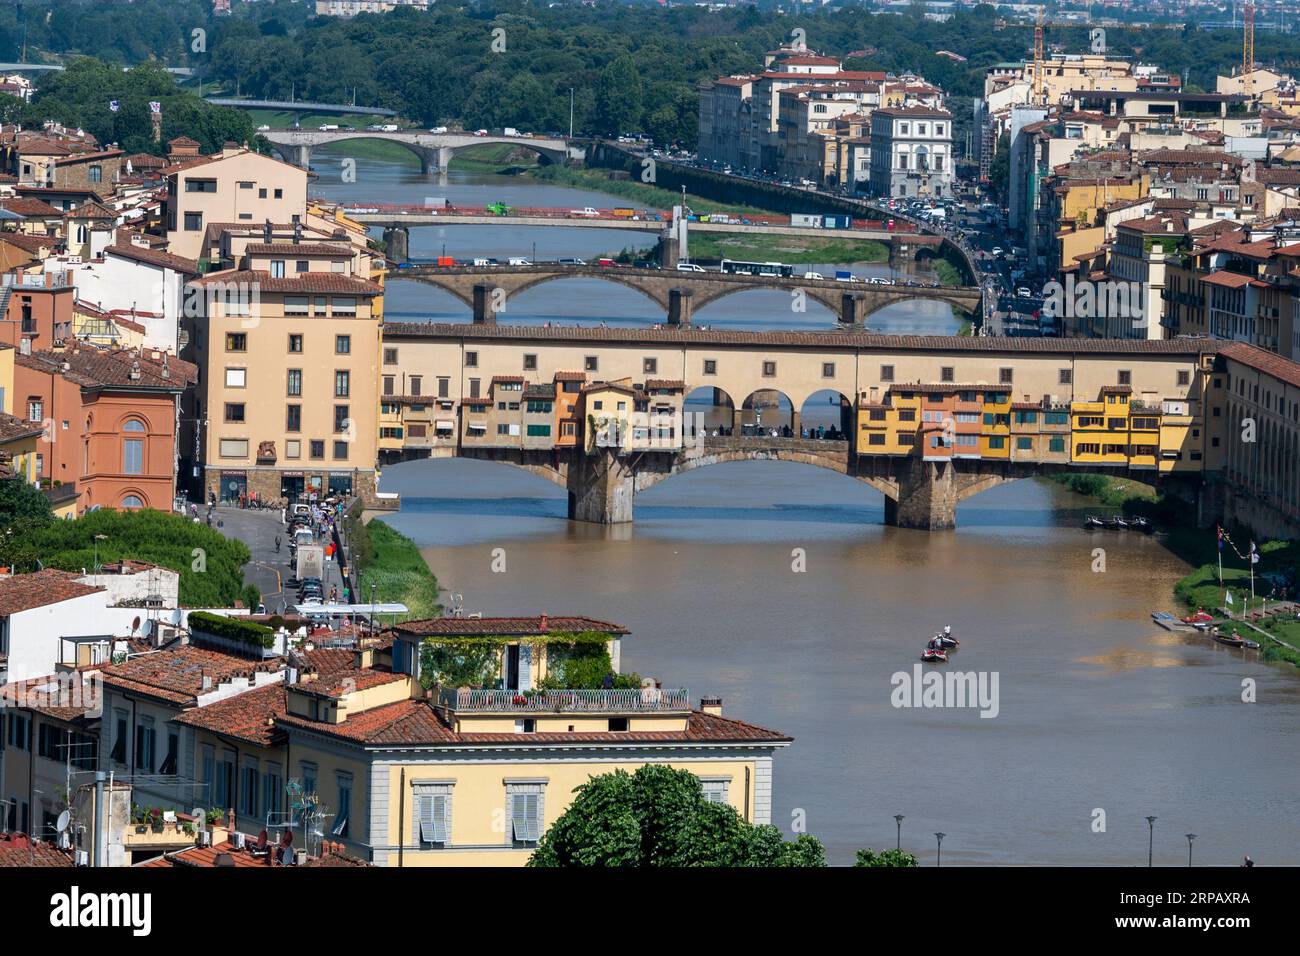 Il più antico ponte medievale sopravvissuto (Ponte Vecchio) con le sue origini romane, attraversato il fiume amo a Firenze, capitale della Toscana nel nord Foto Stock